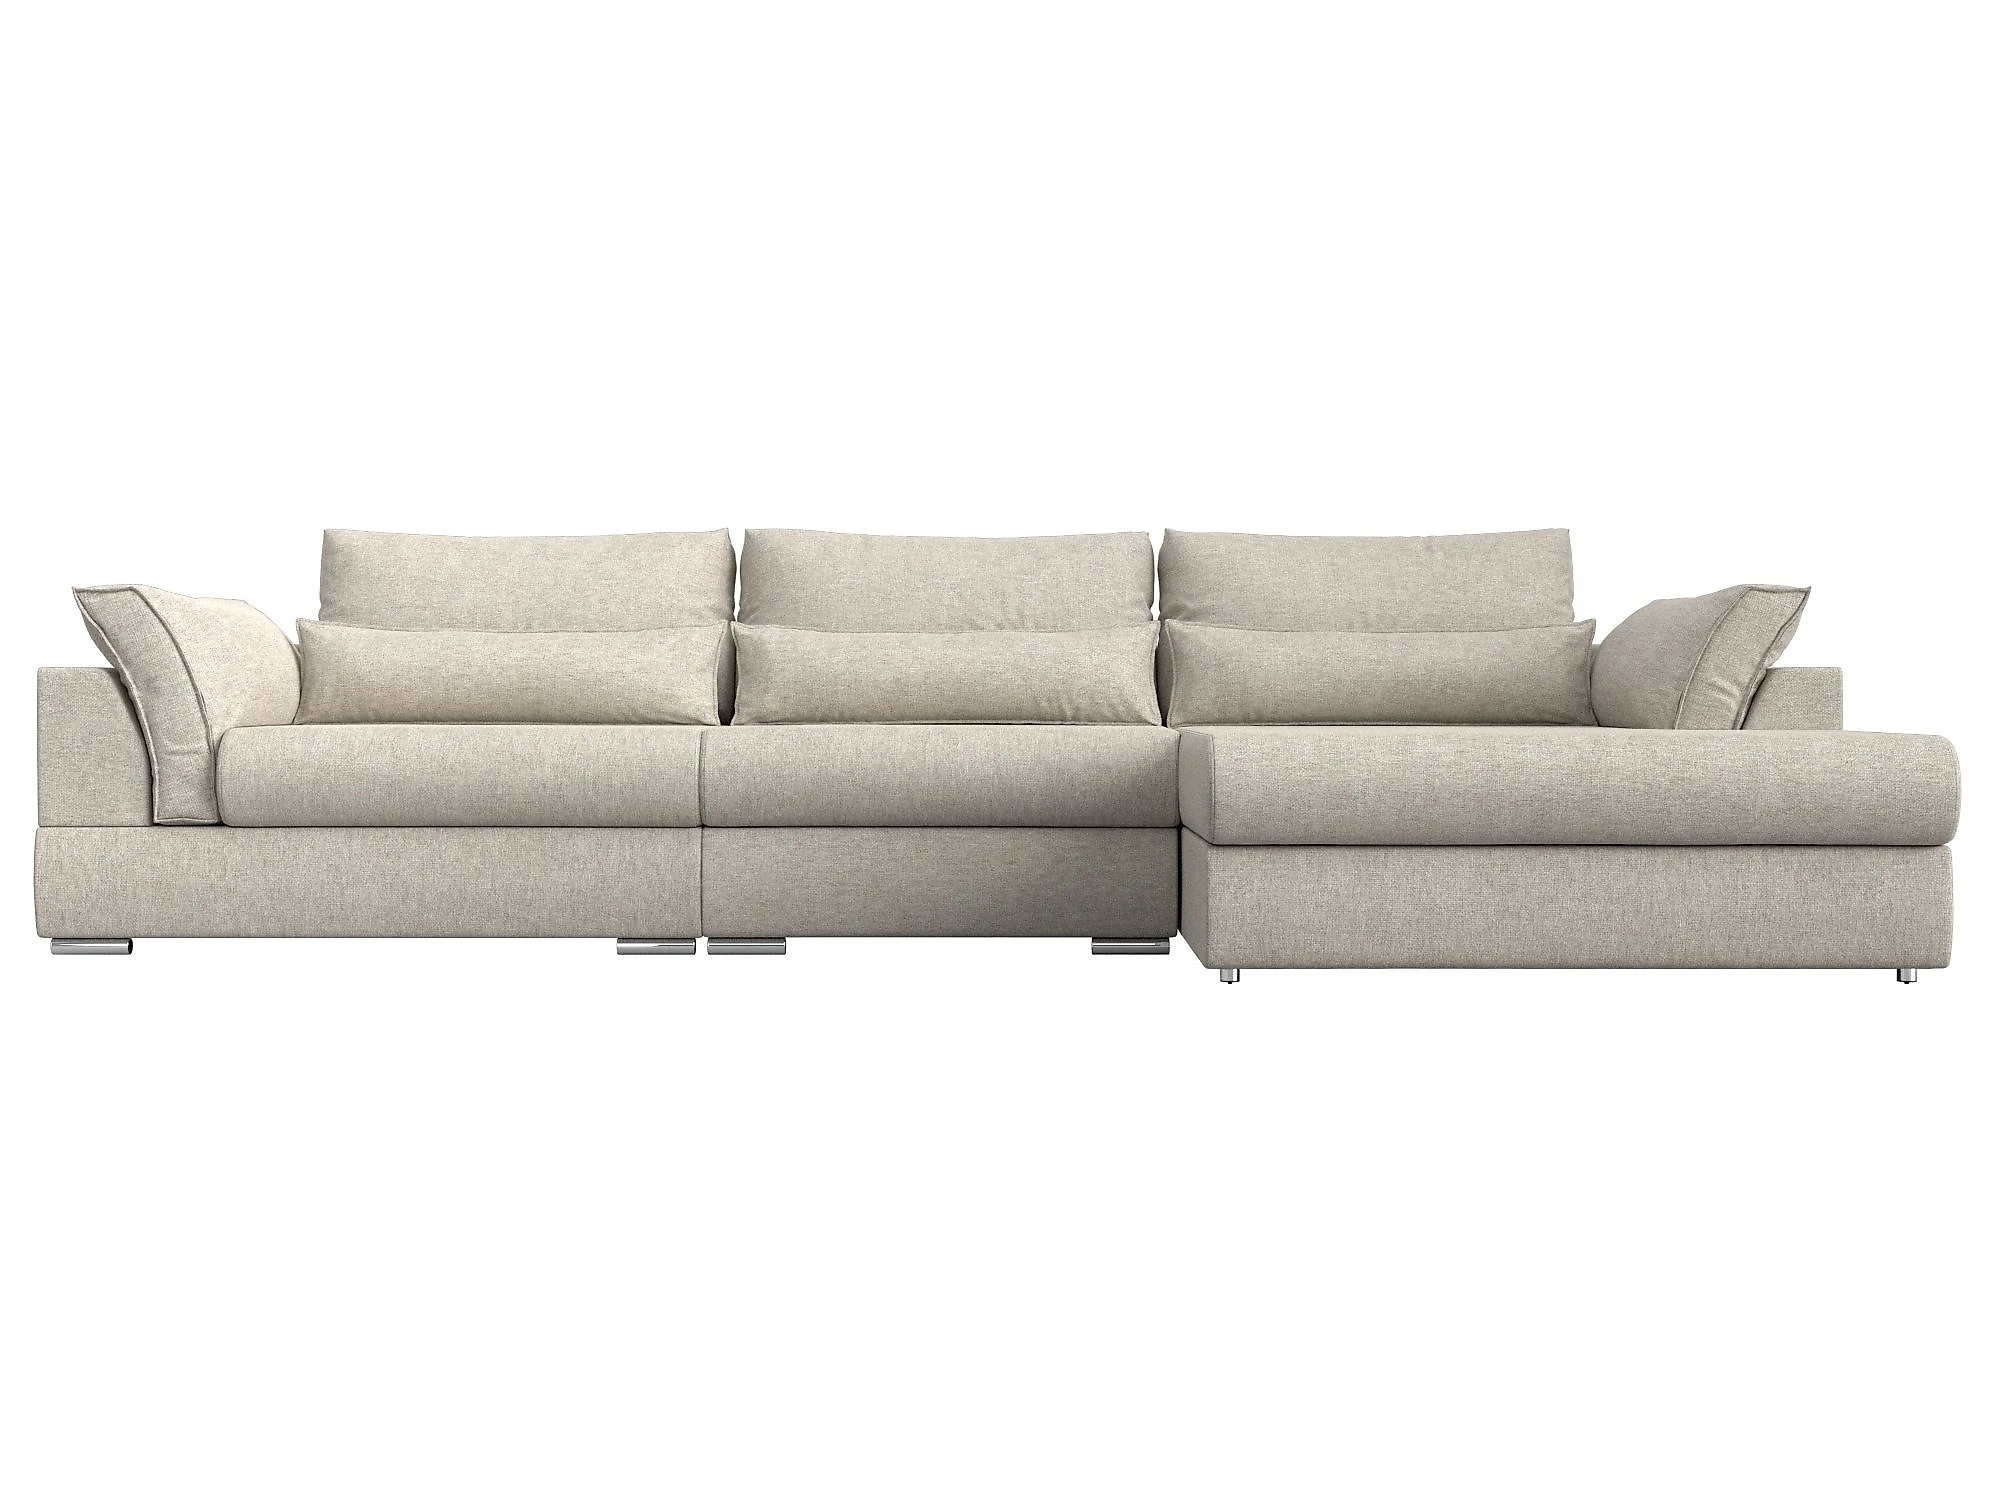  угловой диван из рогожки Пекин Лонг Кантри Дизайн 1